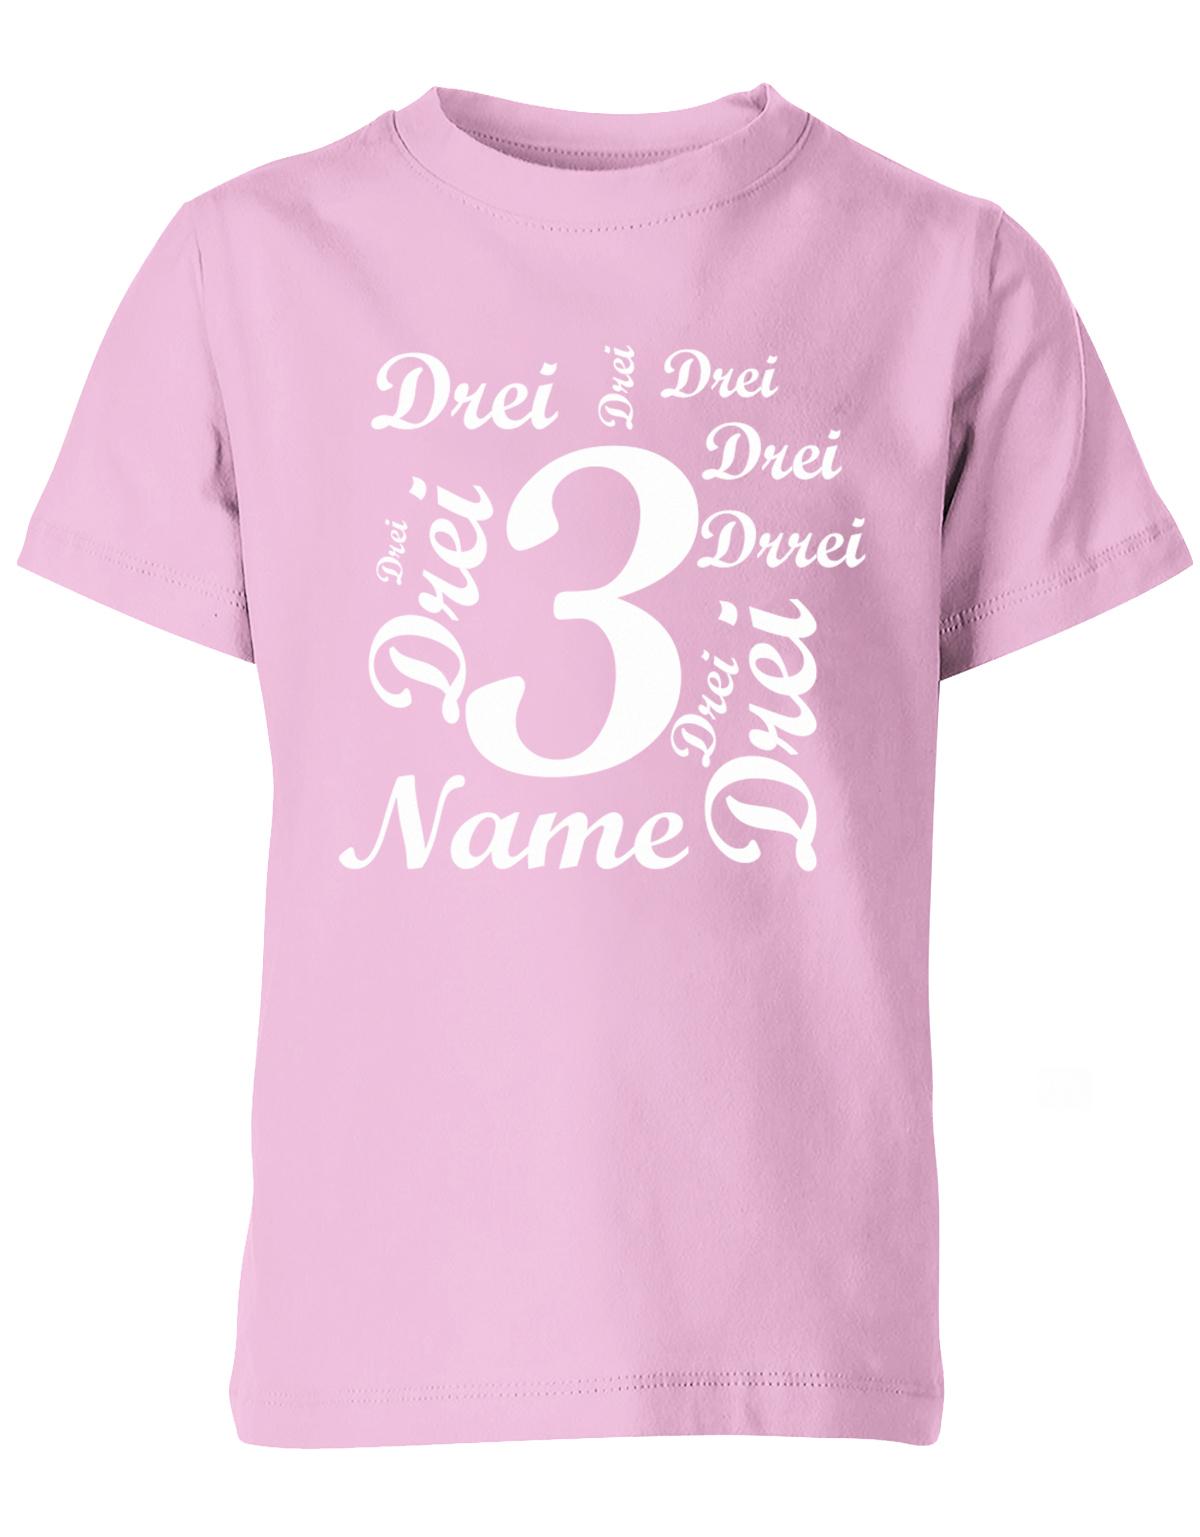 ich-bin-3-viele-dreien-mit-name-geburtstag-kinder-shirt-rosa